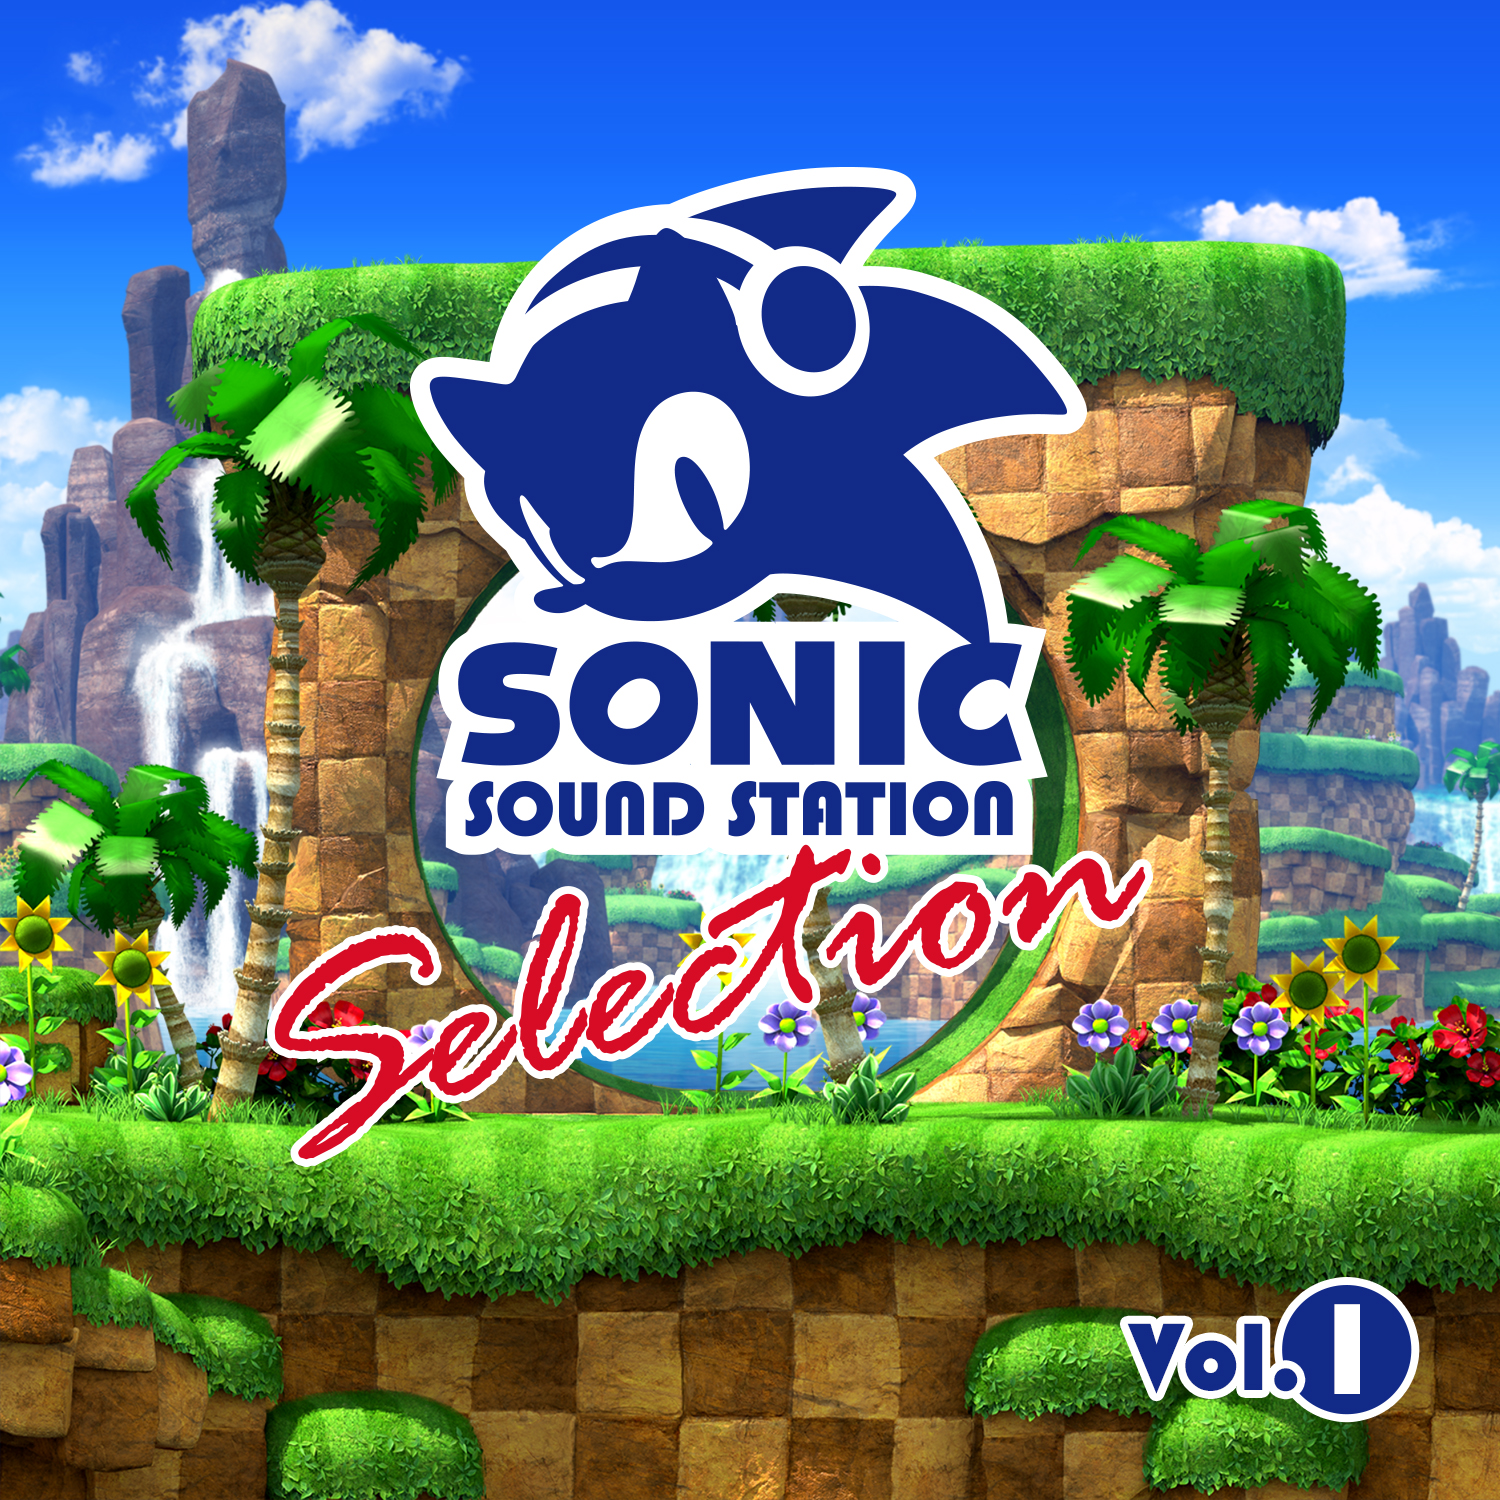 ソニック シリーズより懐かしの名曲をセレクト Sonic Sound Station Selection Vol 1 が配信開始 Game Watch